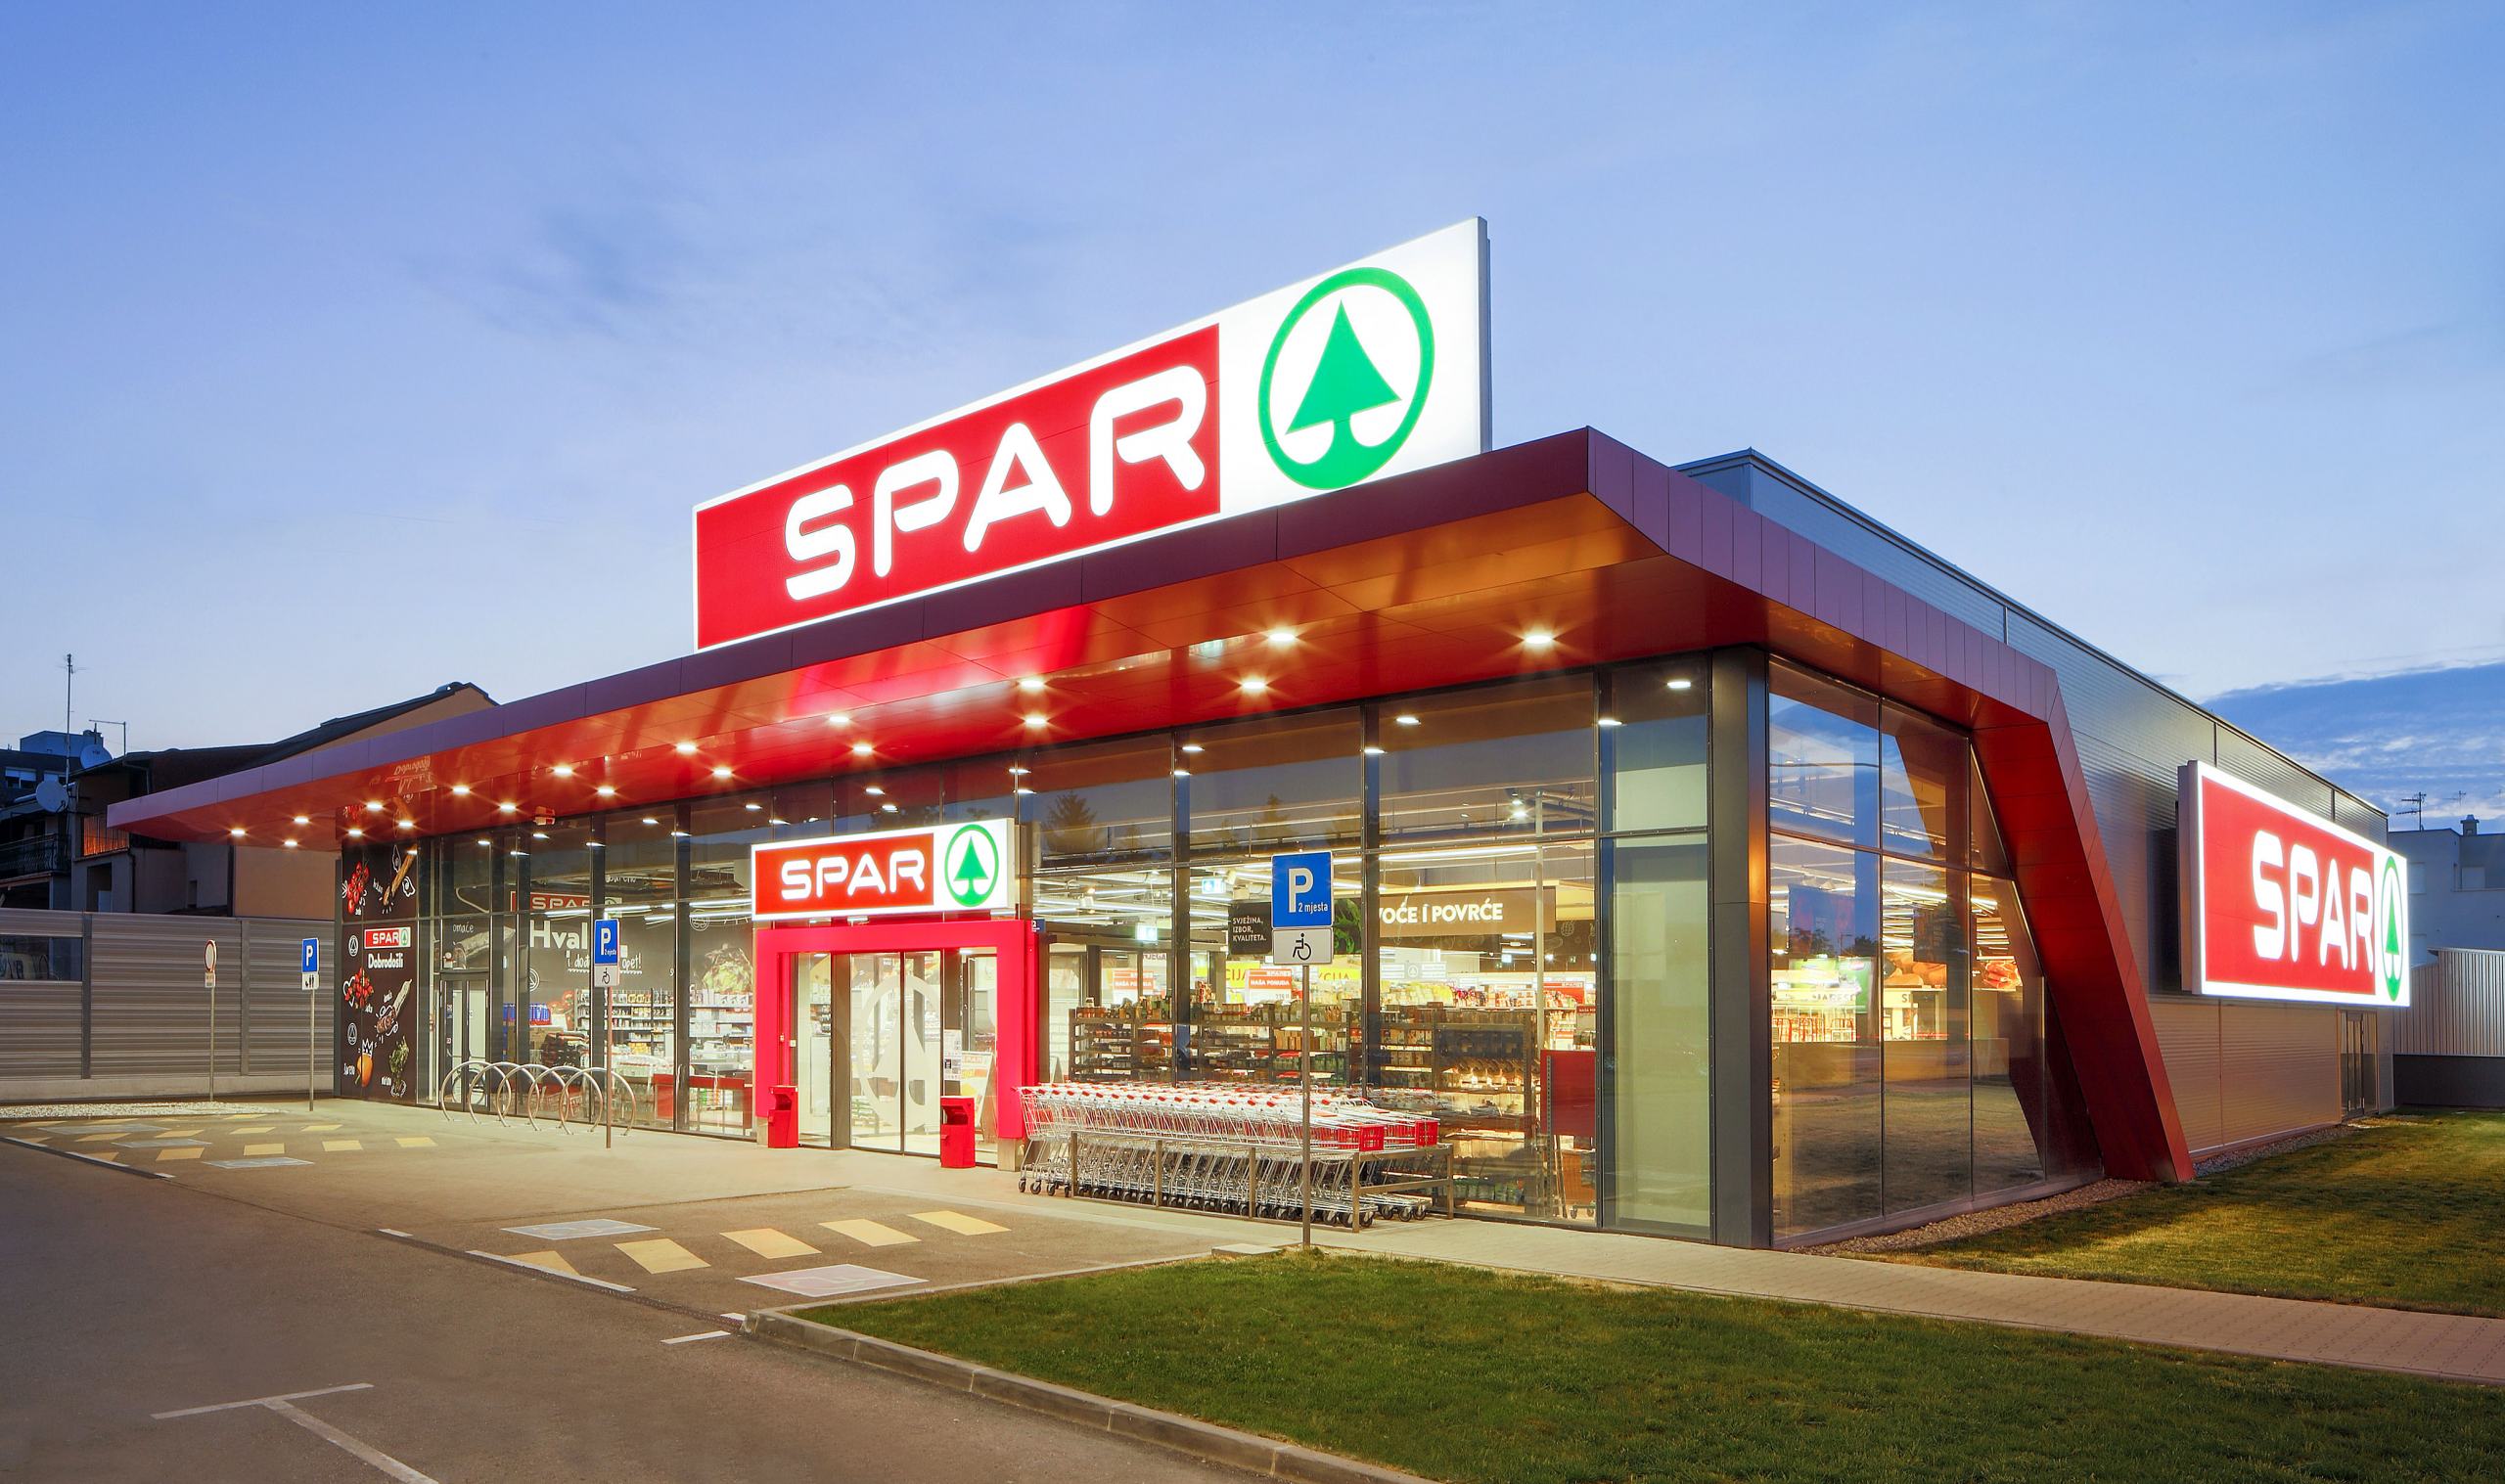 Hrvatski proizvođači zahvaljujući SPAR prodajnoj mreži izvan Hrvatske ostvarili su 145 milijuna eura prometa